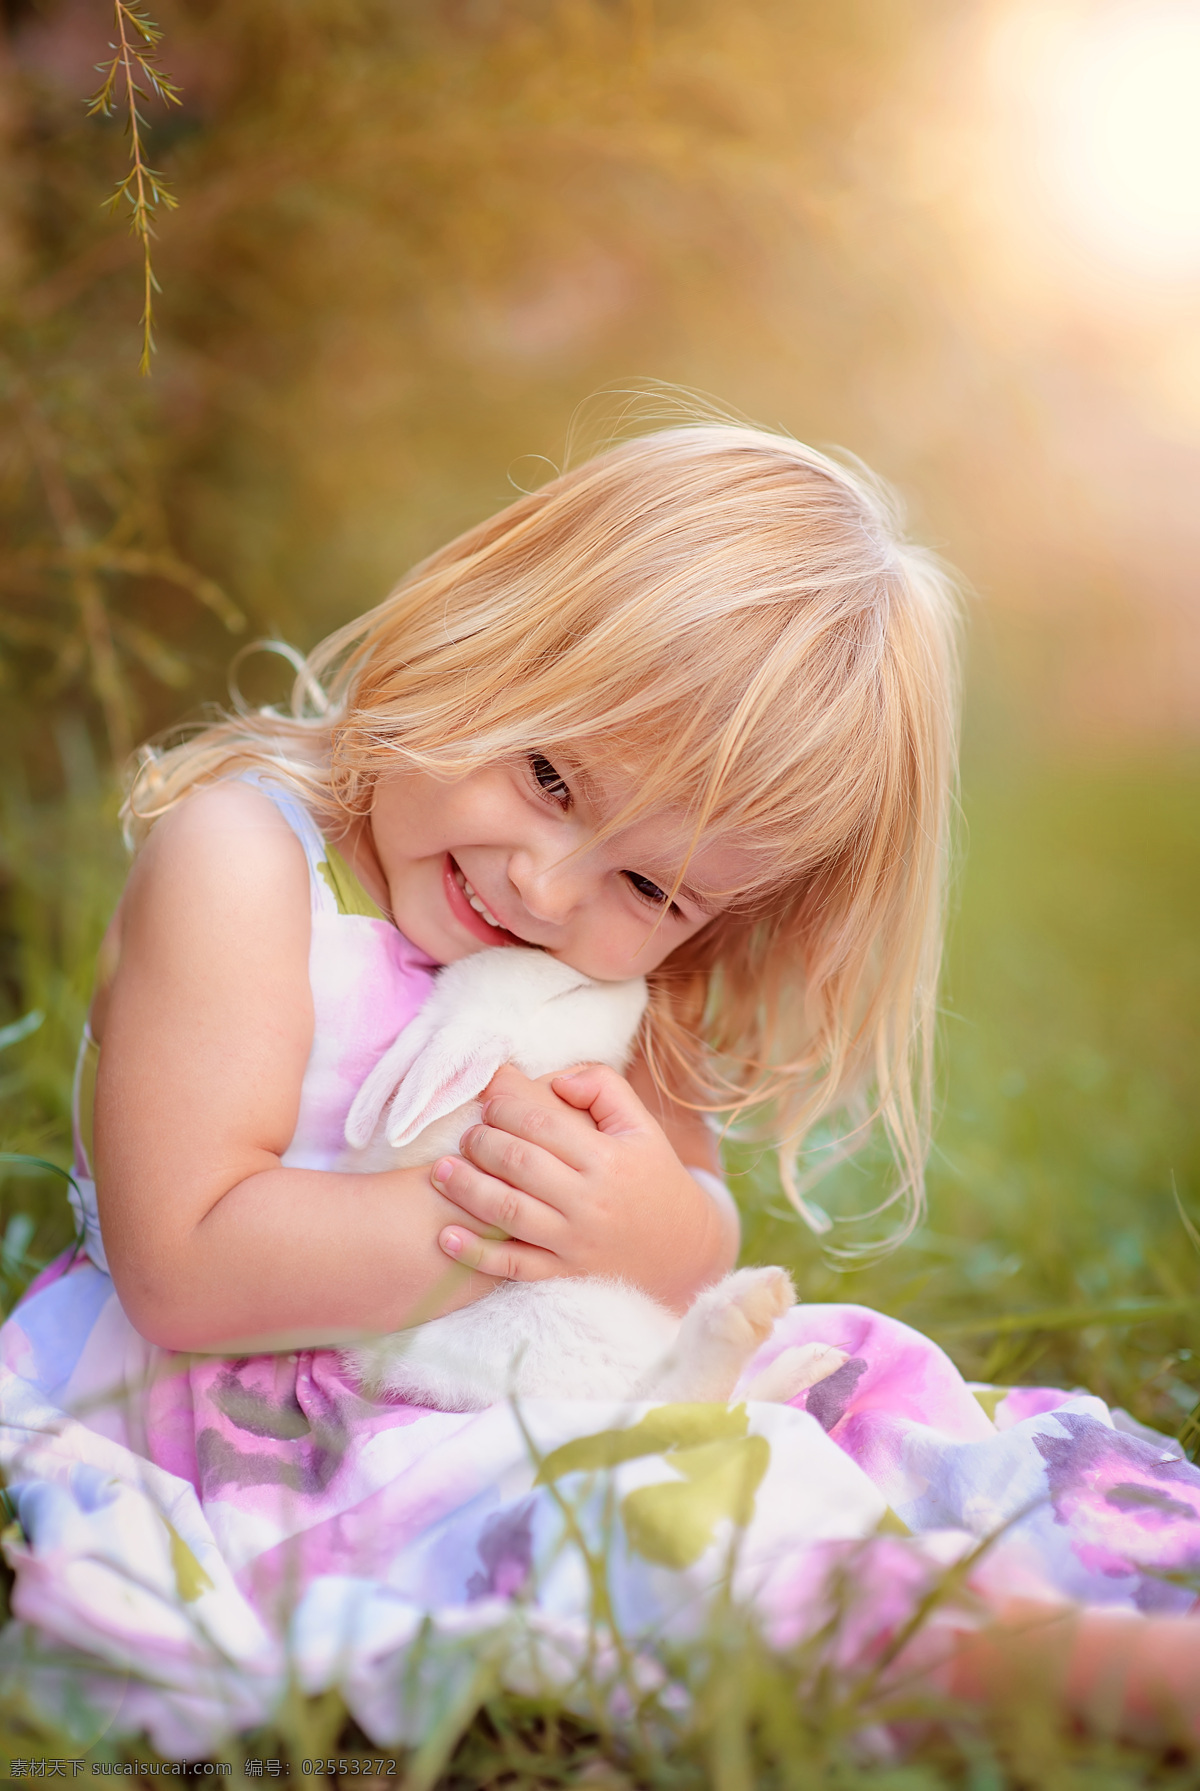 抱 兔子 女孩 草丛 可爱 儿童 儿童图片 人物图片